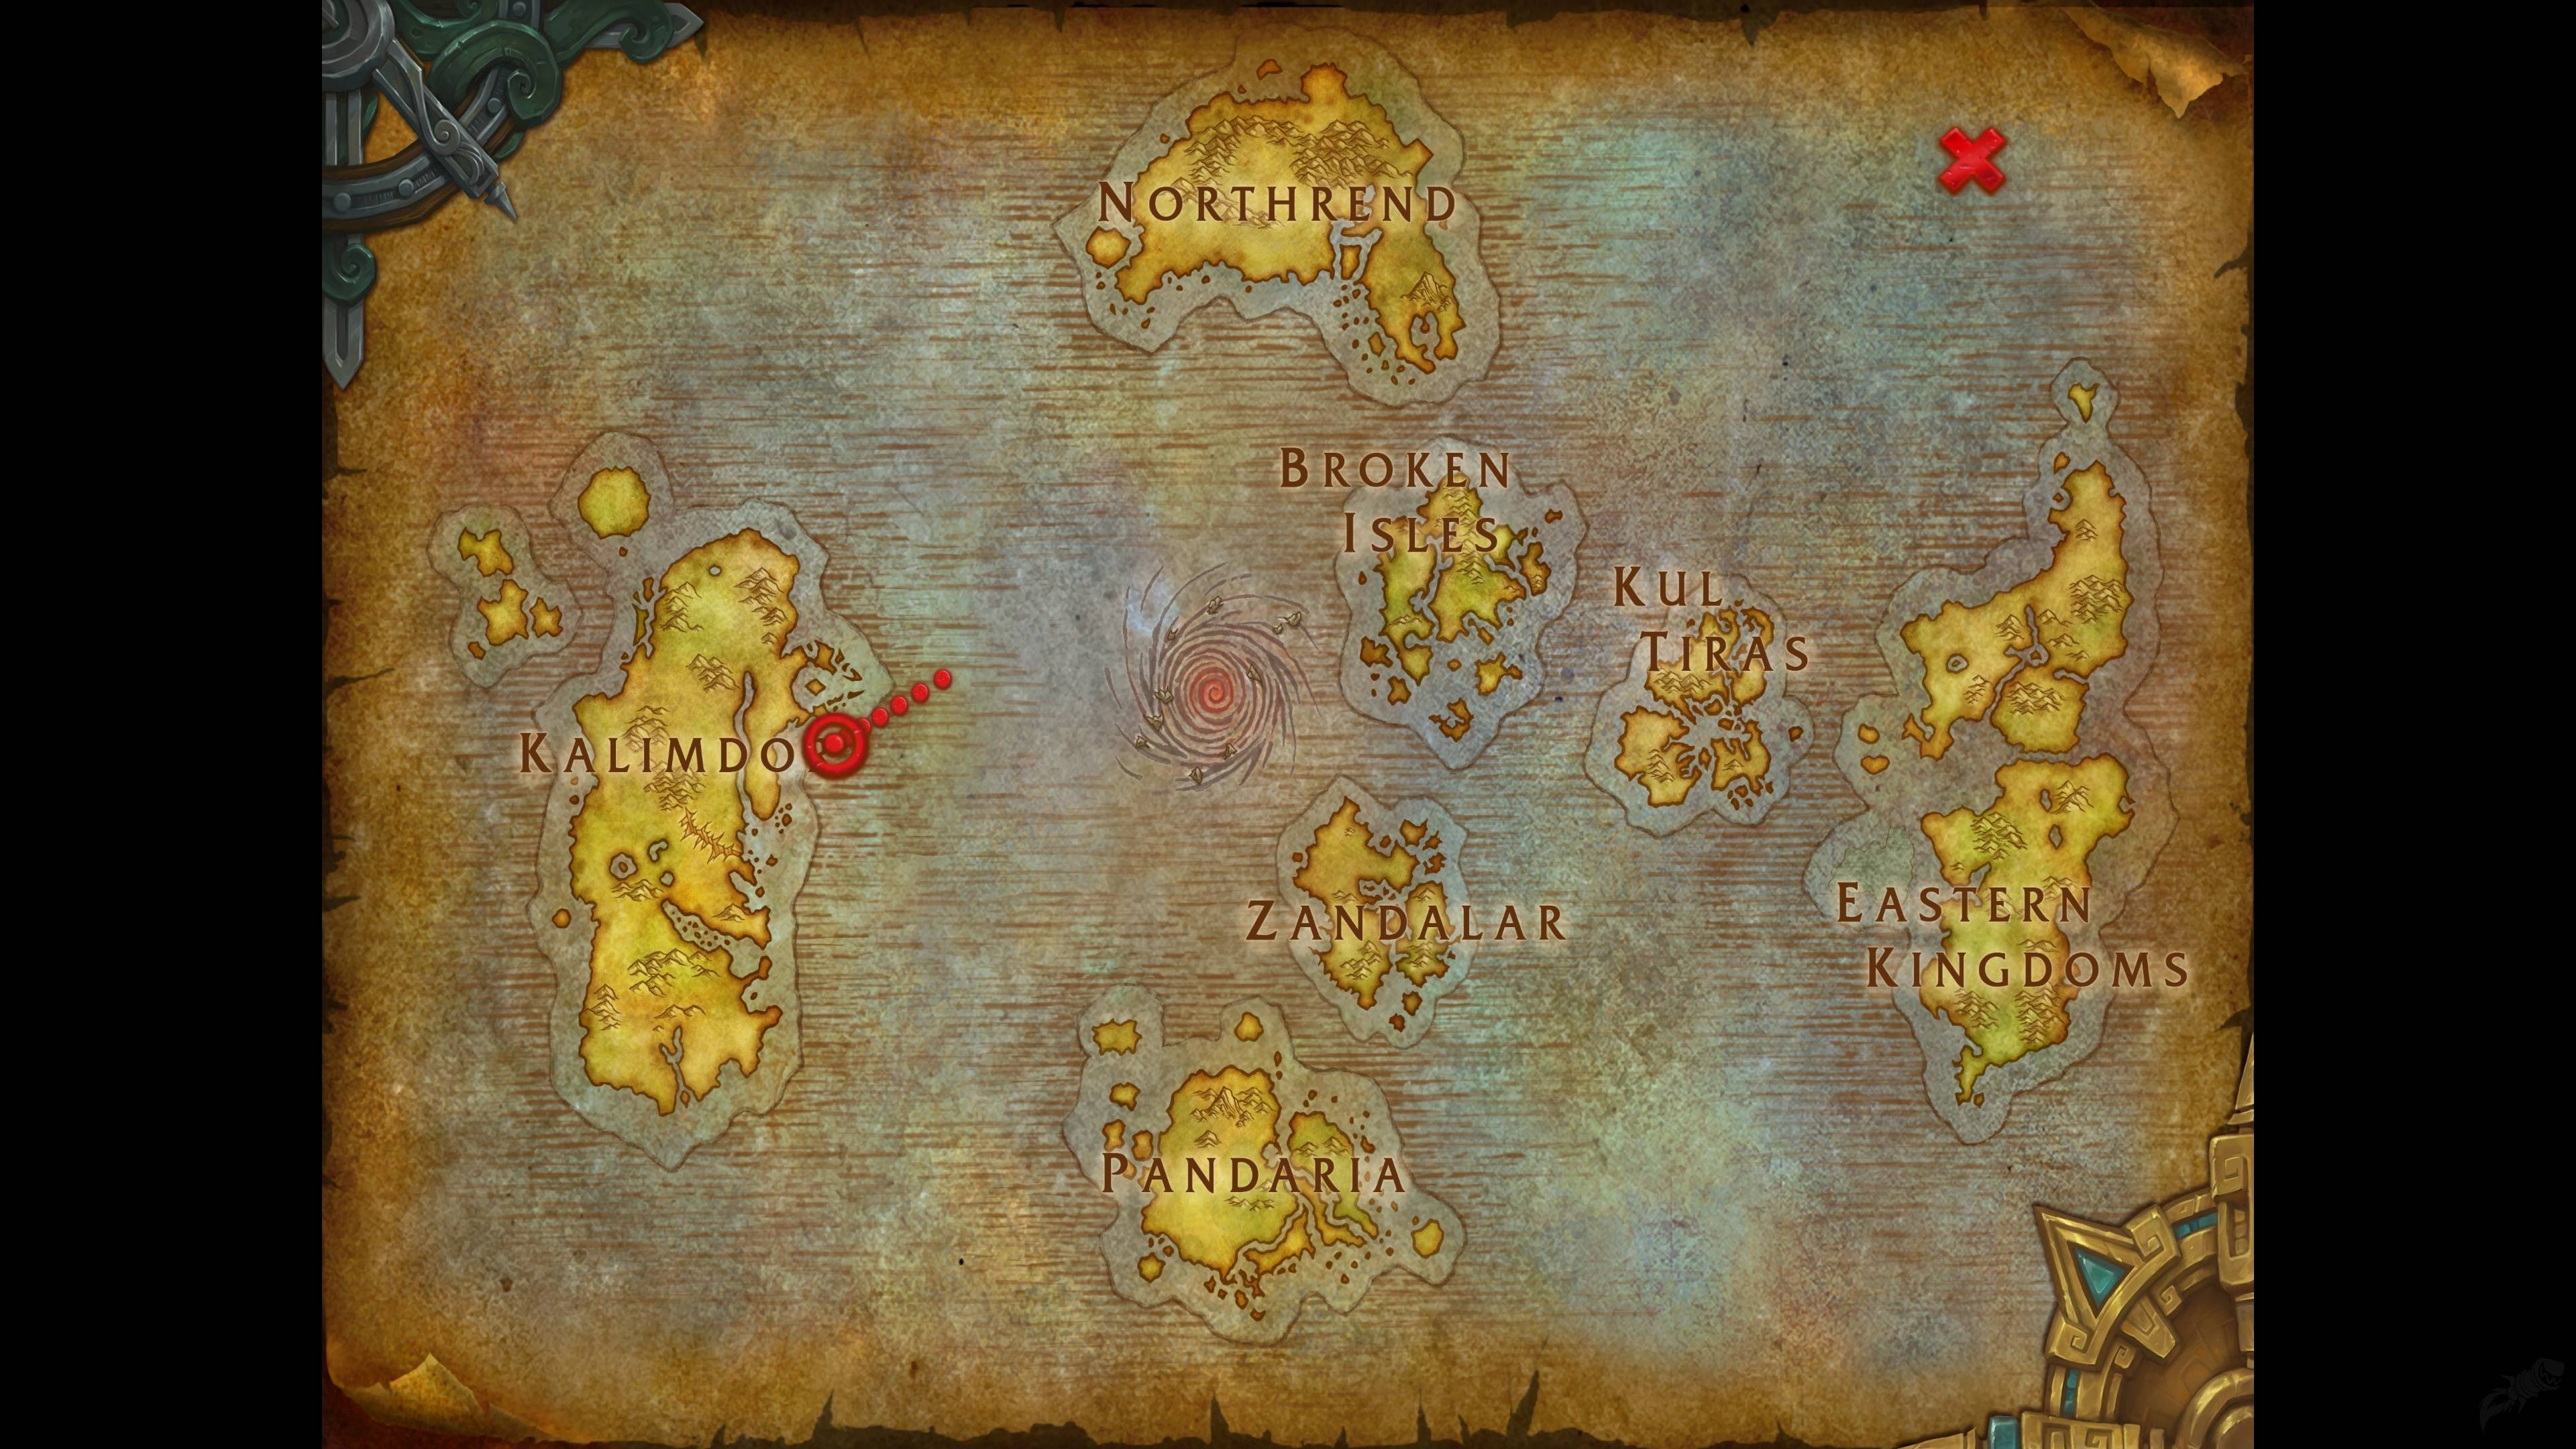 魔兽世界老版高清地图图片